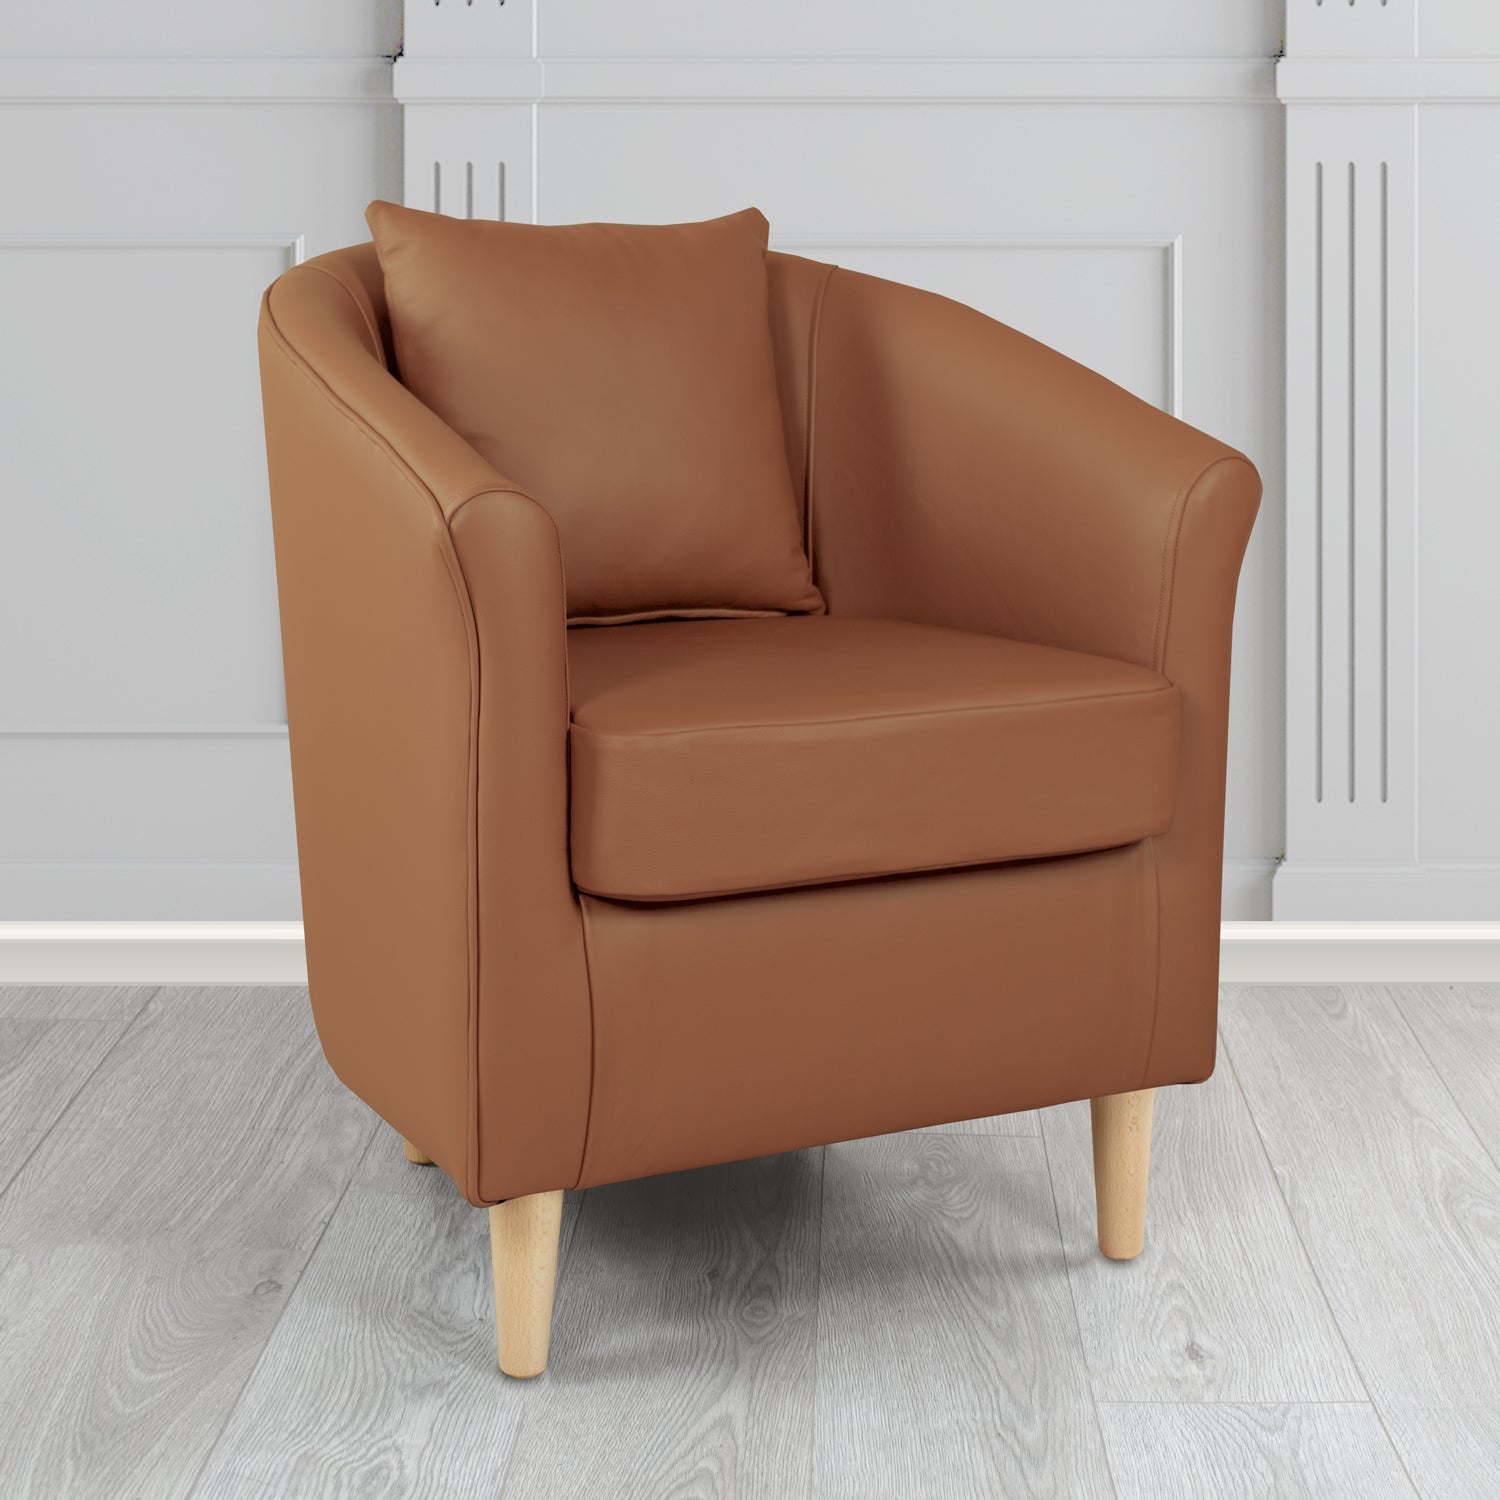 St Tropez Tub Chair in Crib 5 Contempo Castagna Genuine Leather